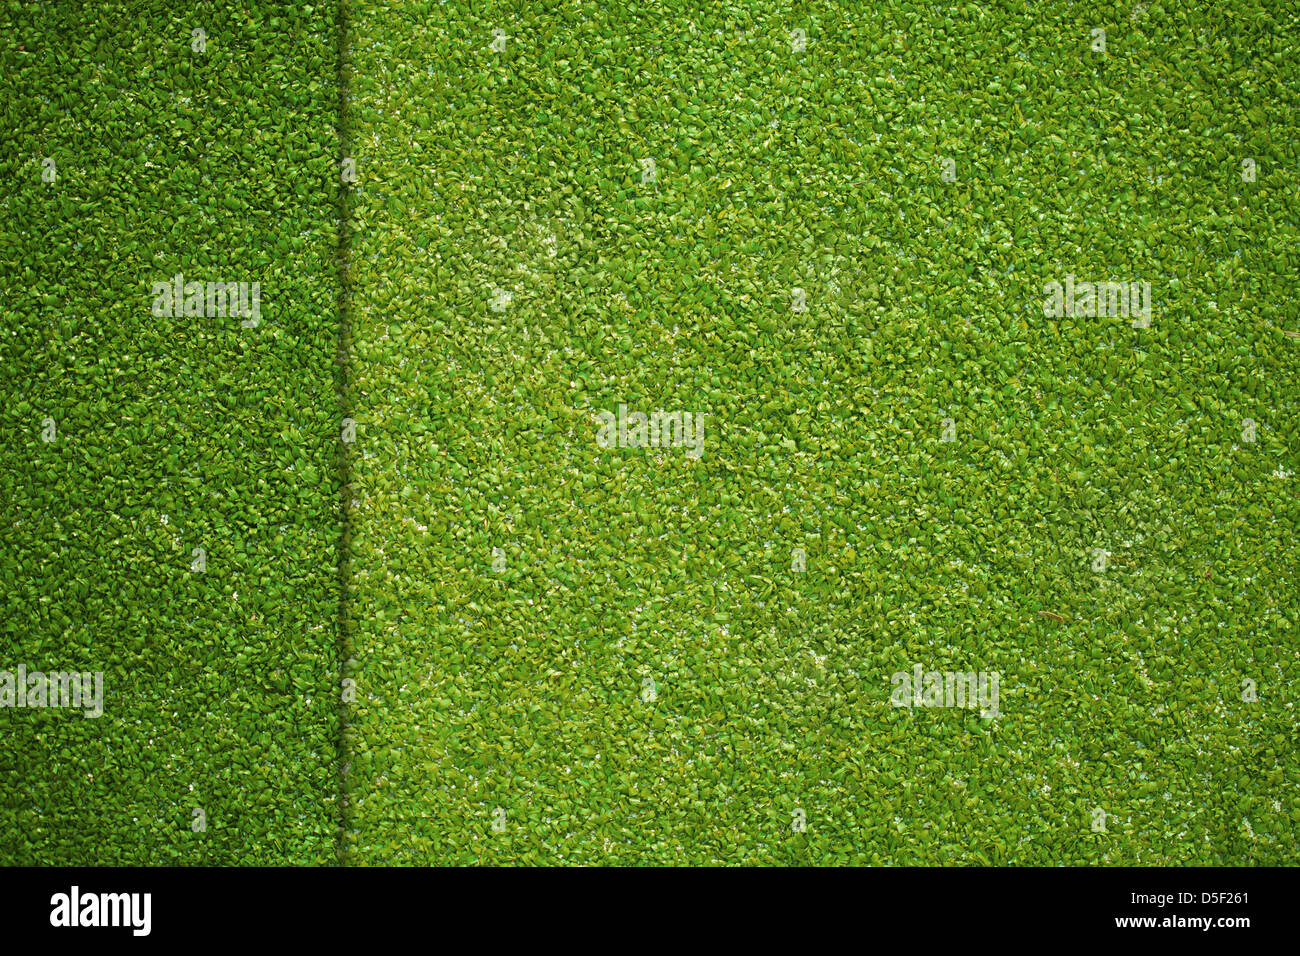 Grass Textur auf künstliche Golf Feld Draufsicht Stockfoto